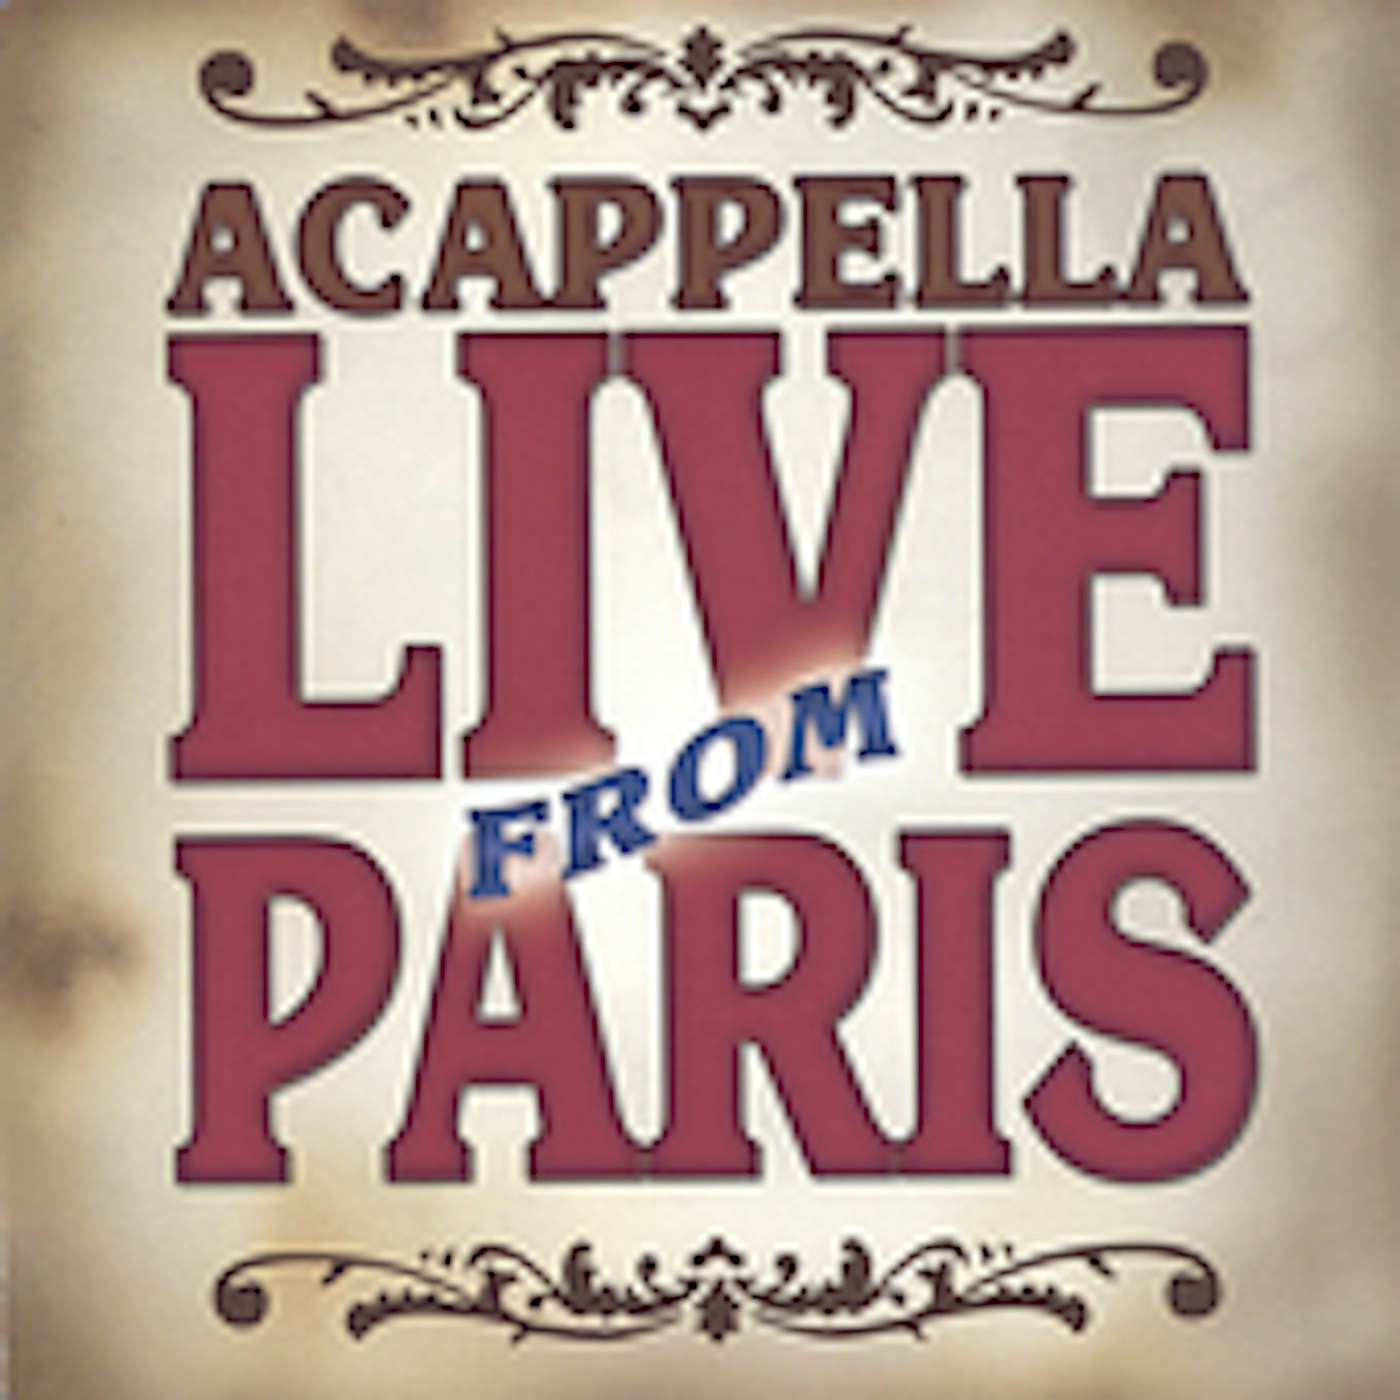 Acappella LIVE FROM PARIS CD